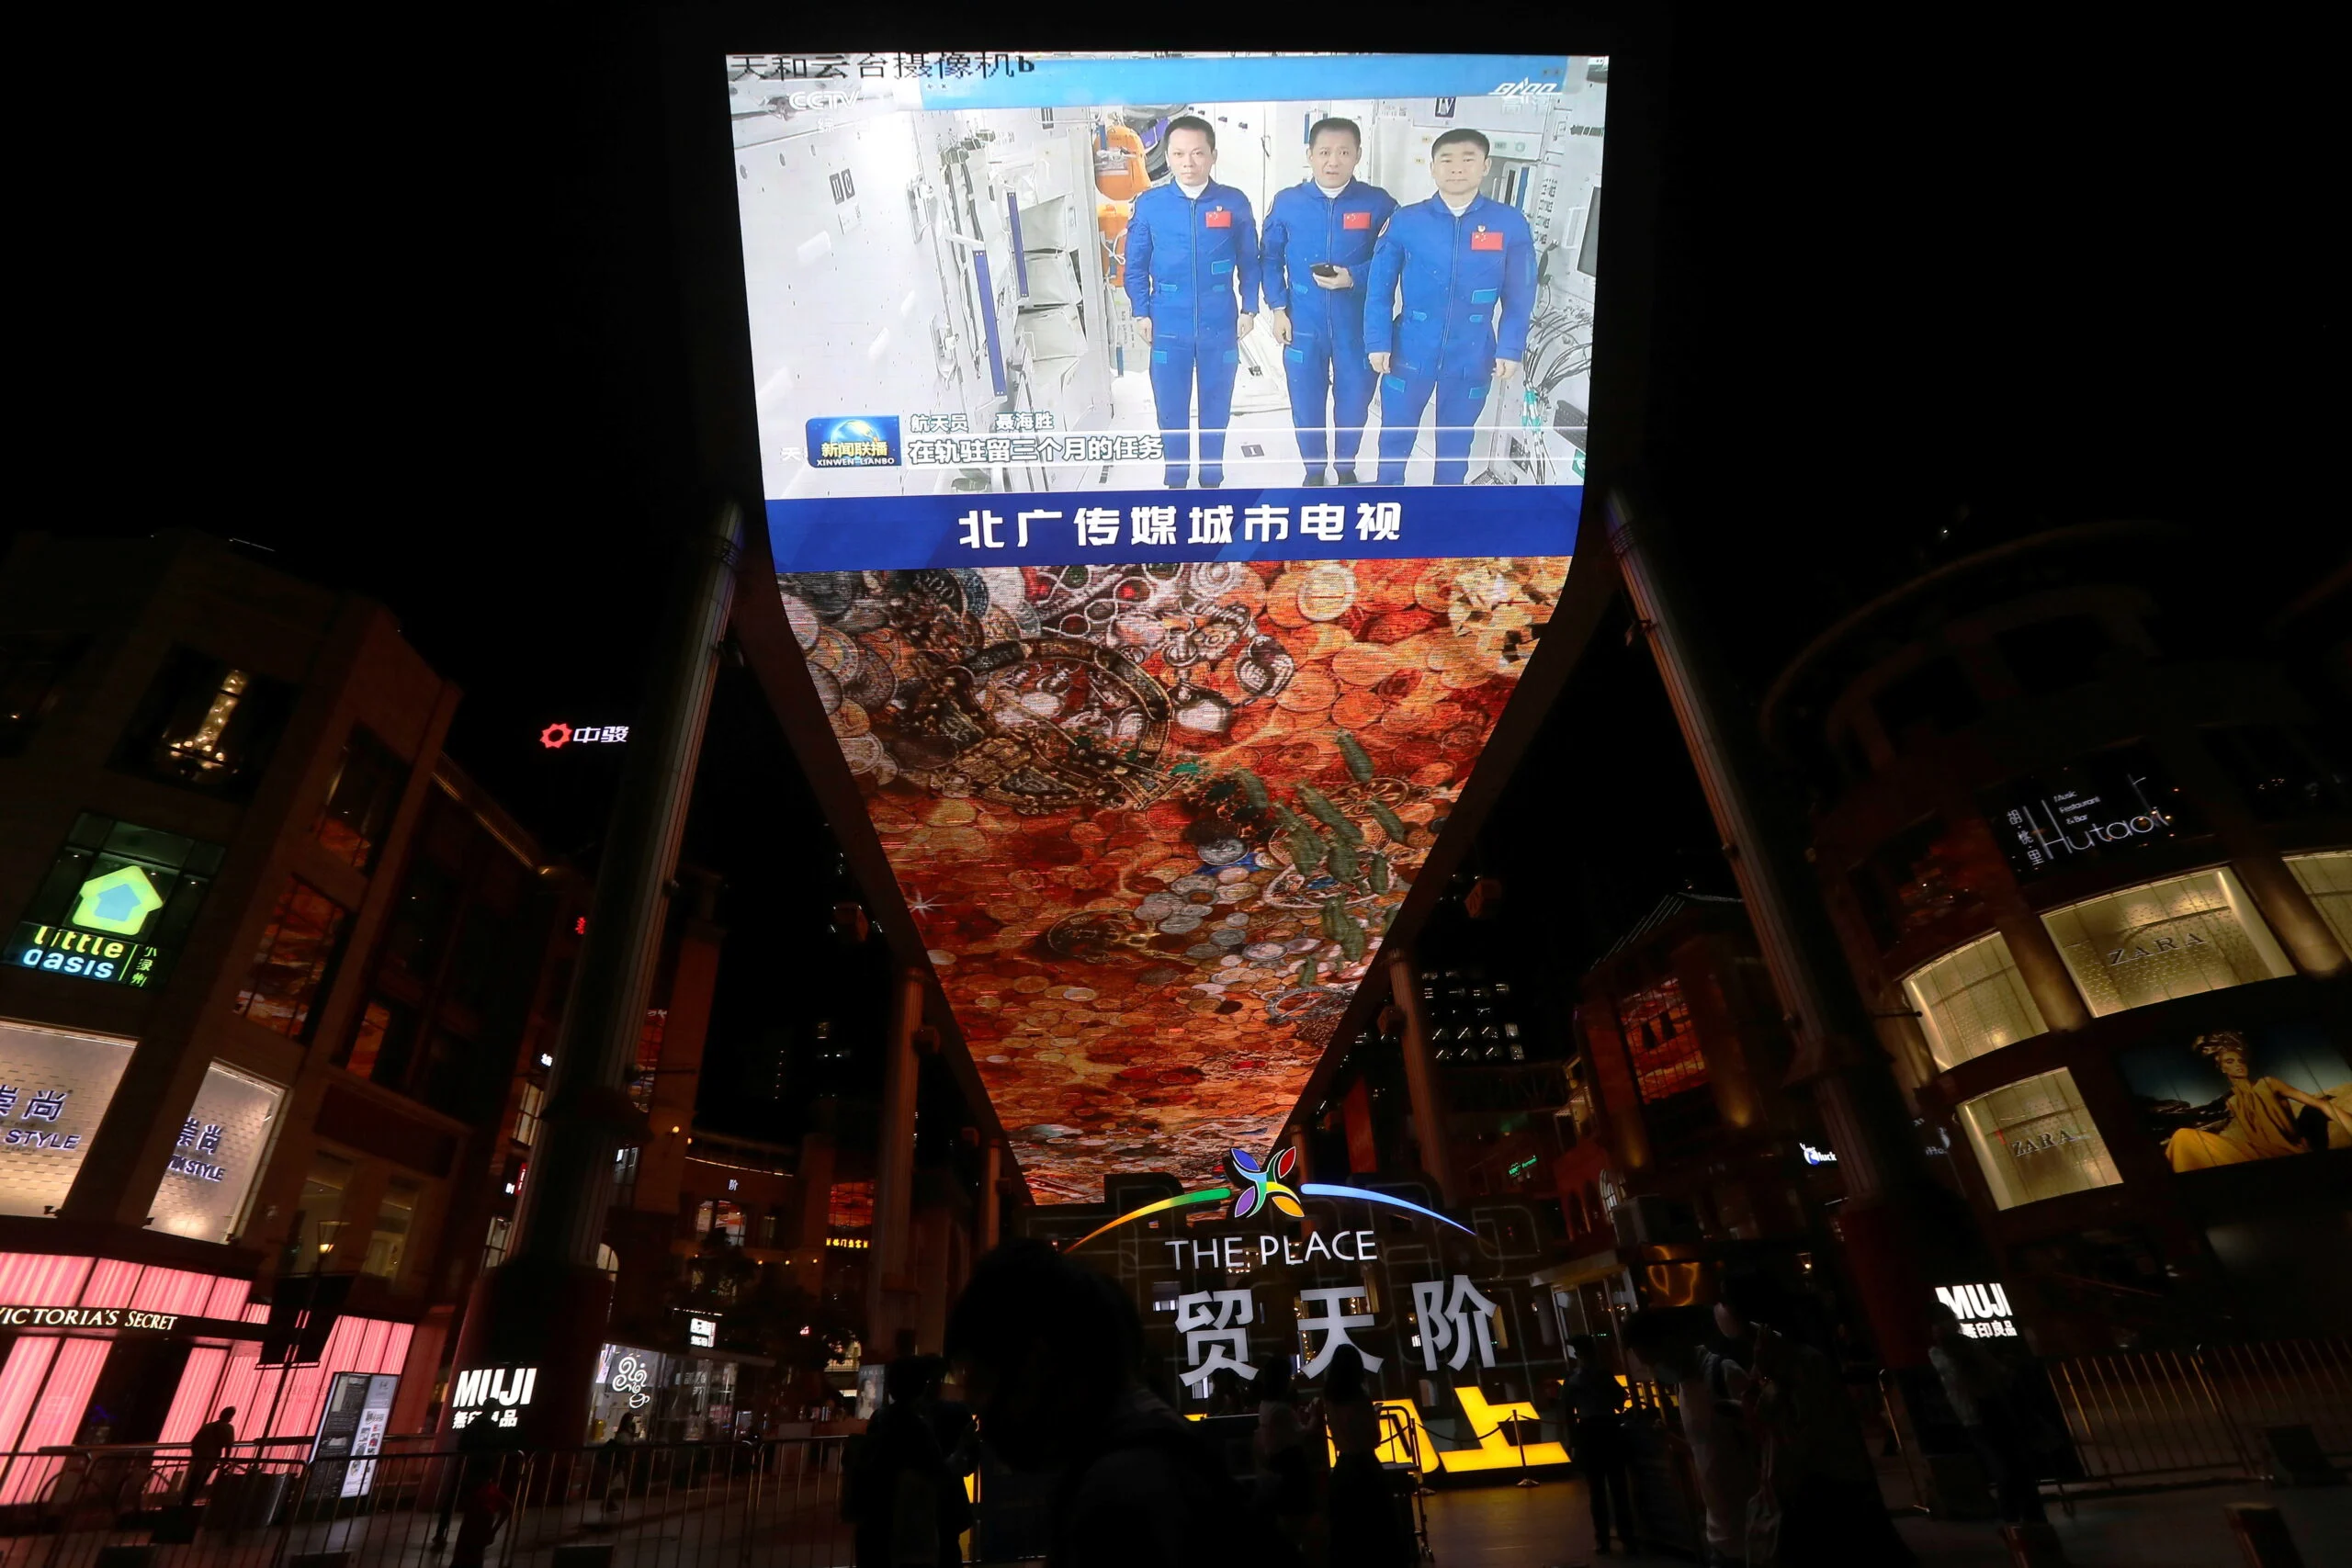 שידור חזרת האסטרונאוטים במרכז בייג'ין